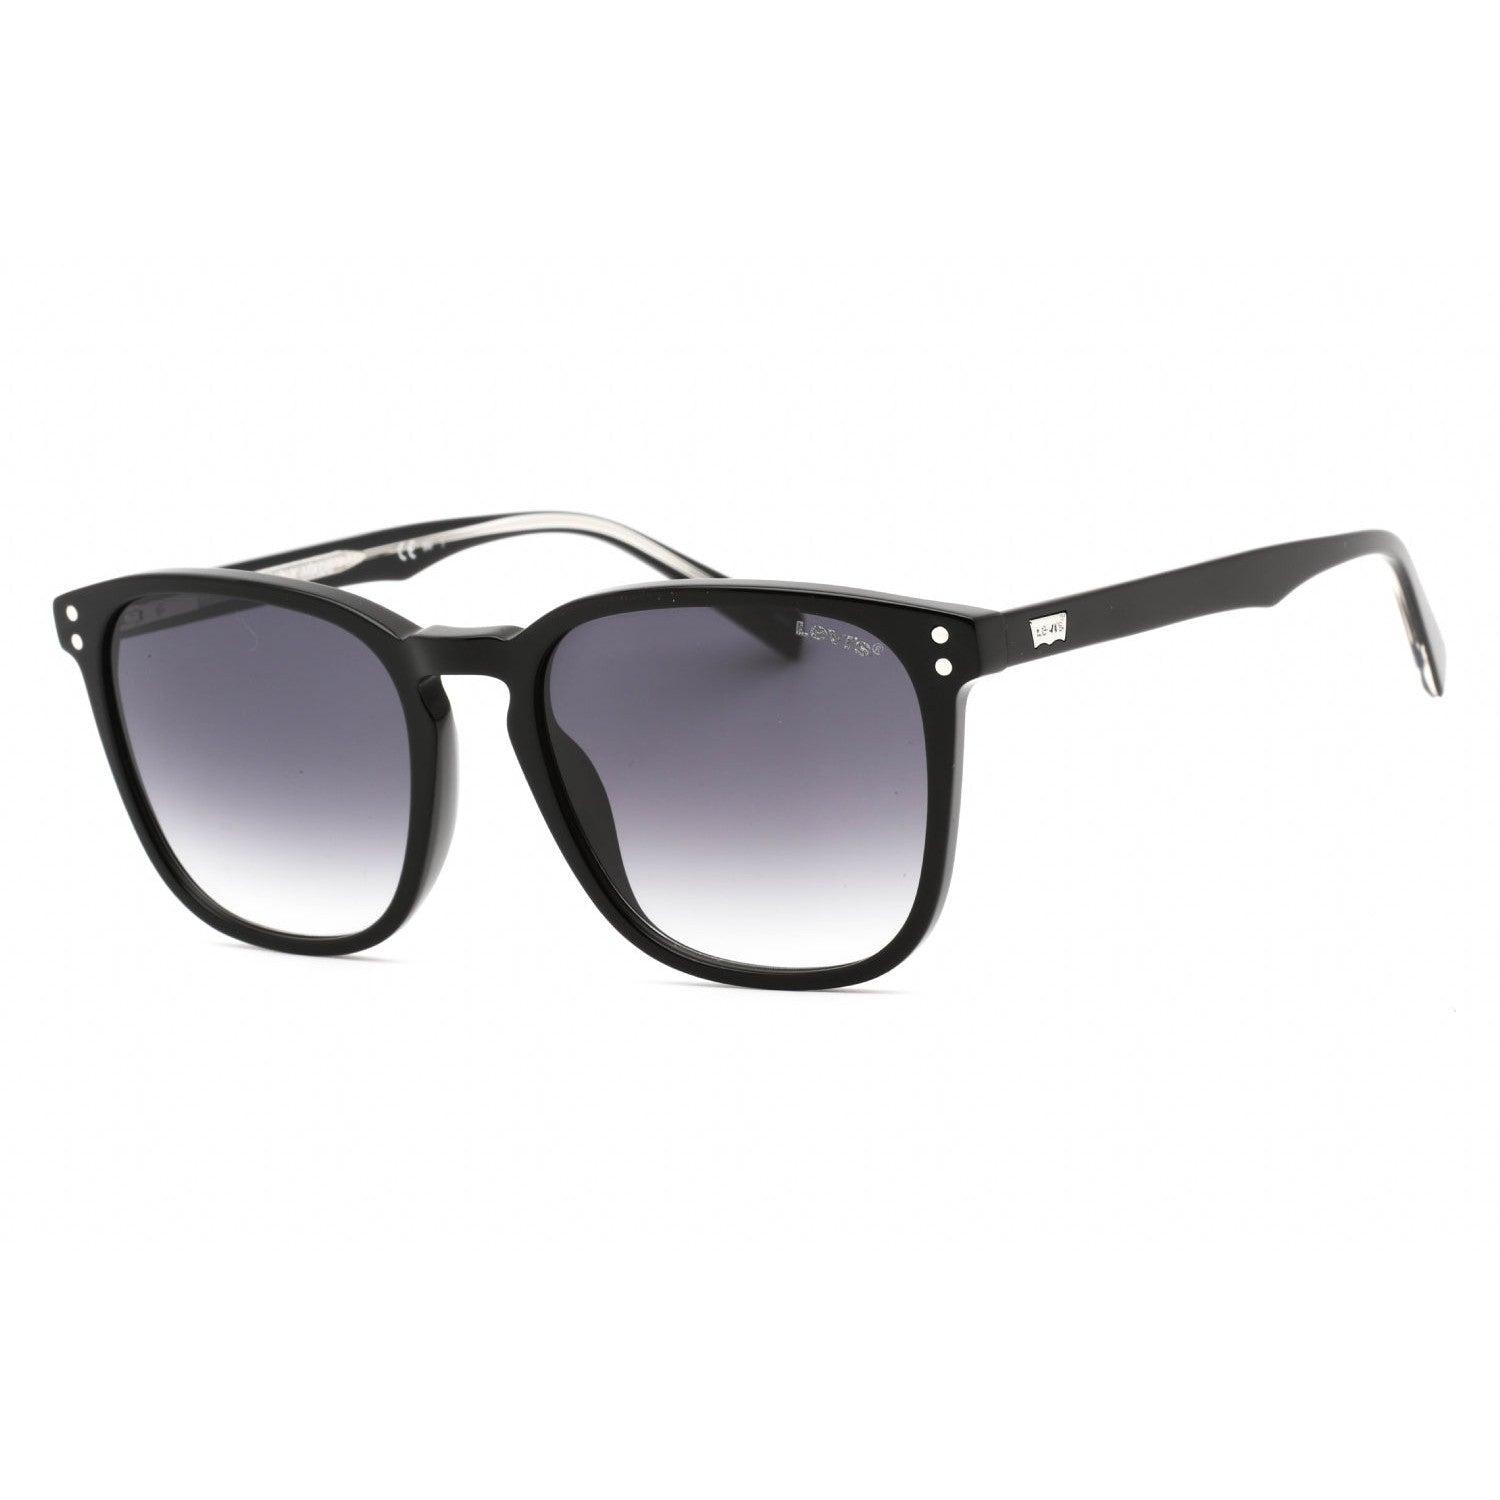 Levi's LV 5000 0TI7 00 Men's Black Ruthenium Frame Eyeglasses